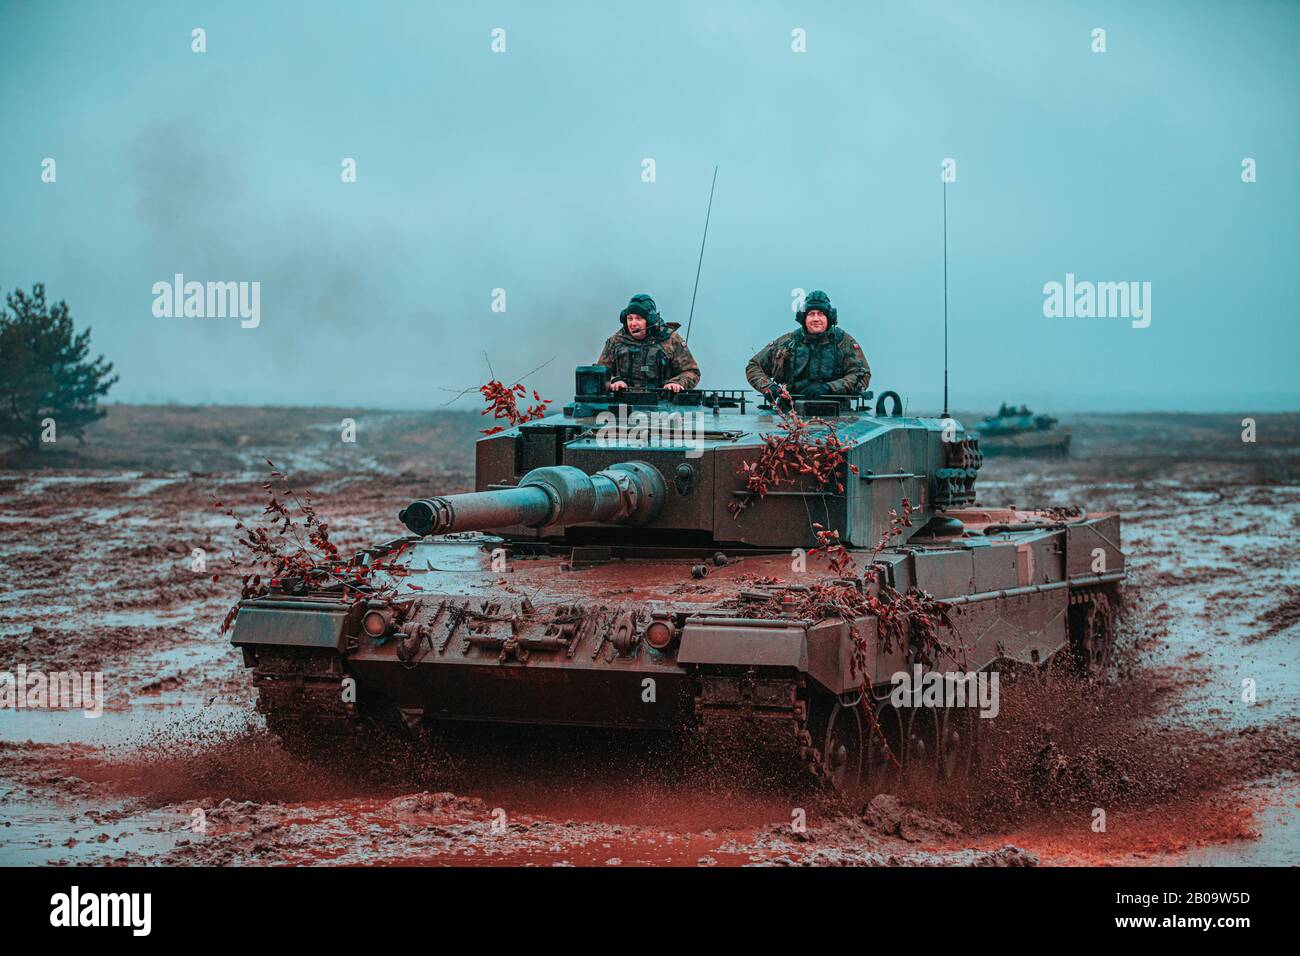 Les Soldats polonais, affectés à la 1ère Brigade blindée de Varsovie, exploitent un char Leopard 2 dans le cadre d'un scénario d'entraînement multinational à l'appui du Groupe de bataille de l'OTAN sur la présence avancée Pologne le 6 février 2020 à Bemowo Piskie, Pologne. La Présence avancée de l'OTAN se compose de quatre groupes de combat de taille bataillon déployés sur une base de rotation persistante vers l'Estonie, la Lettonie, la Lituanie et la Pologne. Banque D'Images